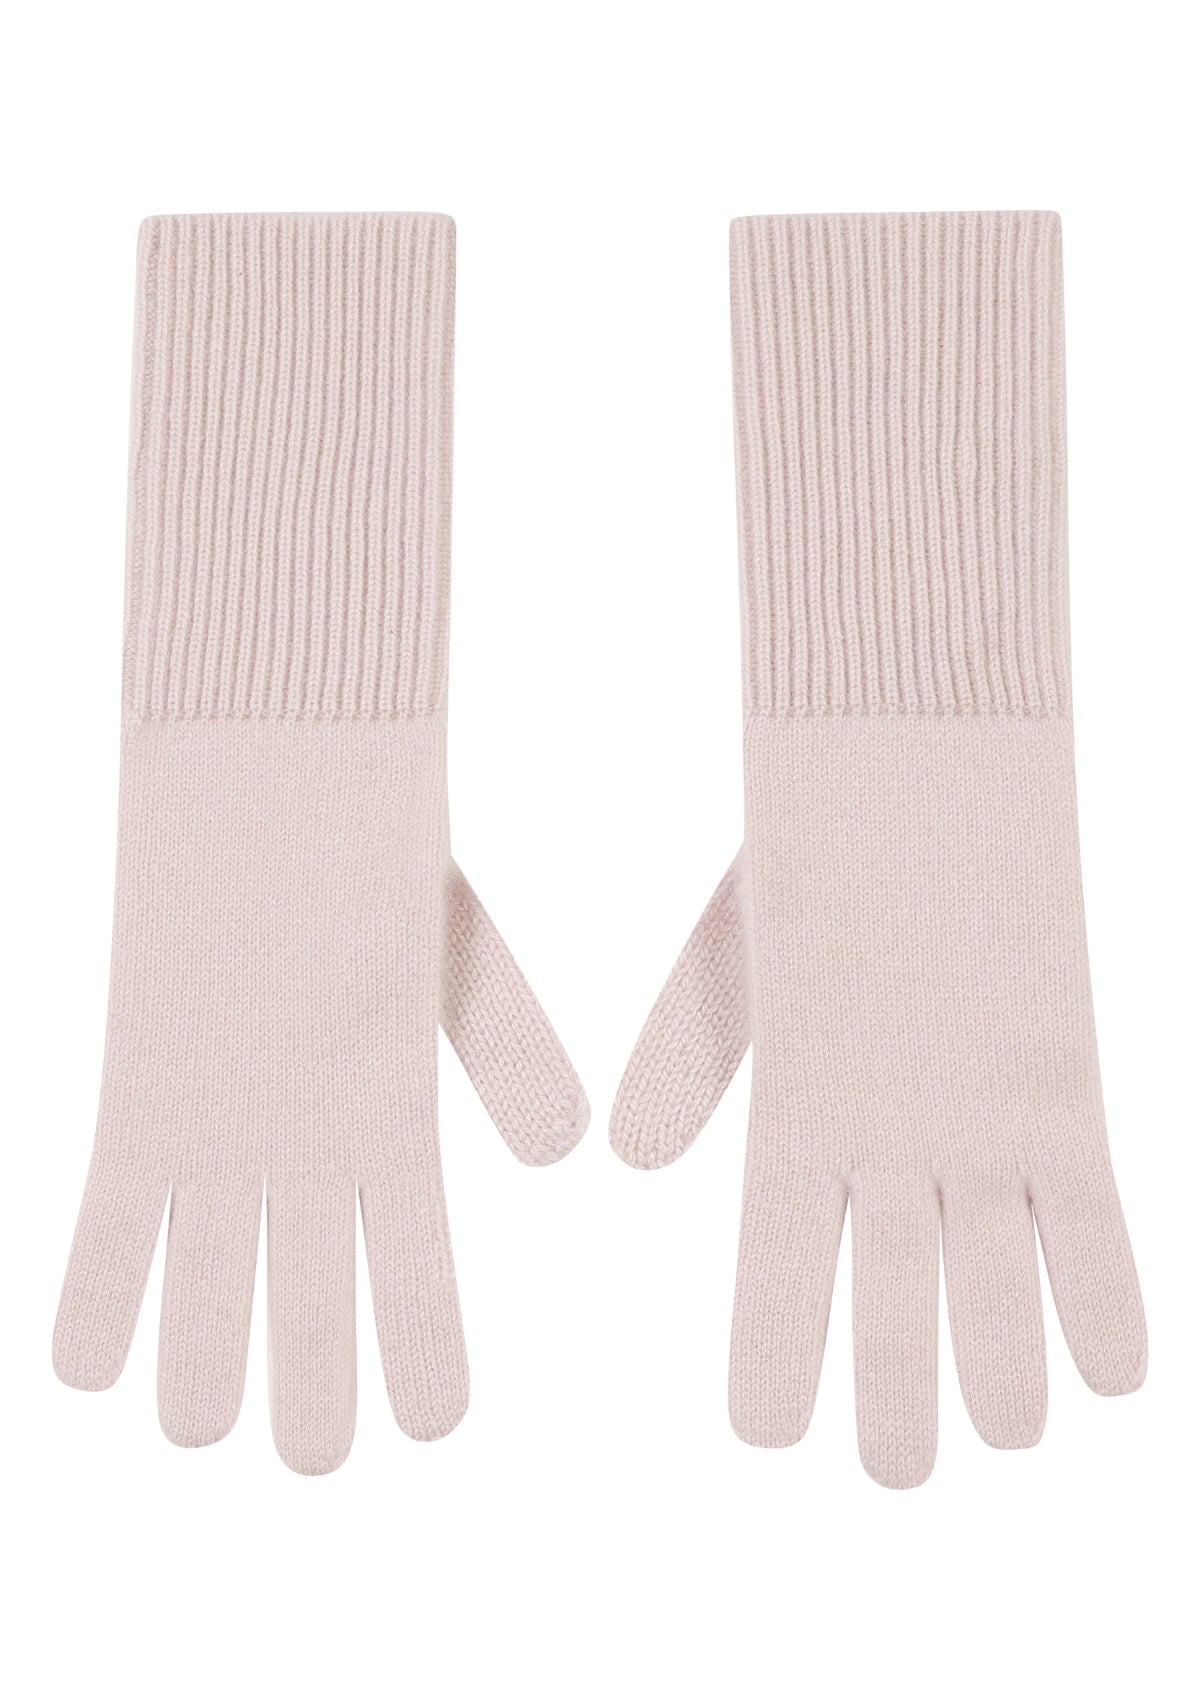 Cashmere Glove in Ballet Pink